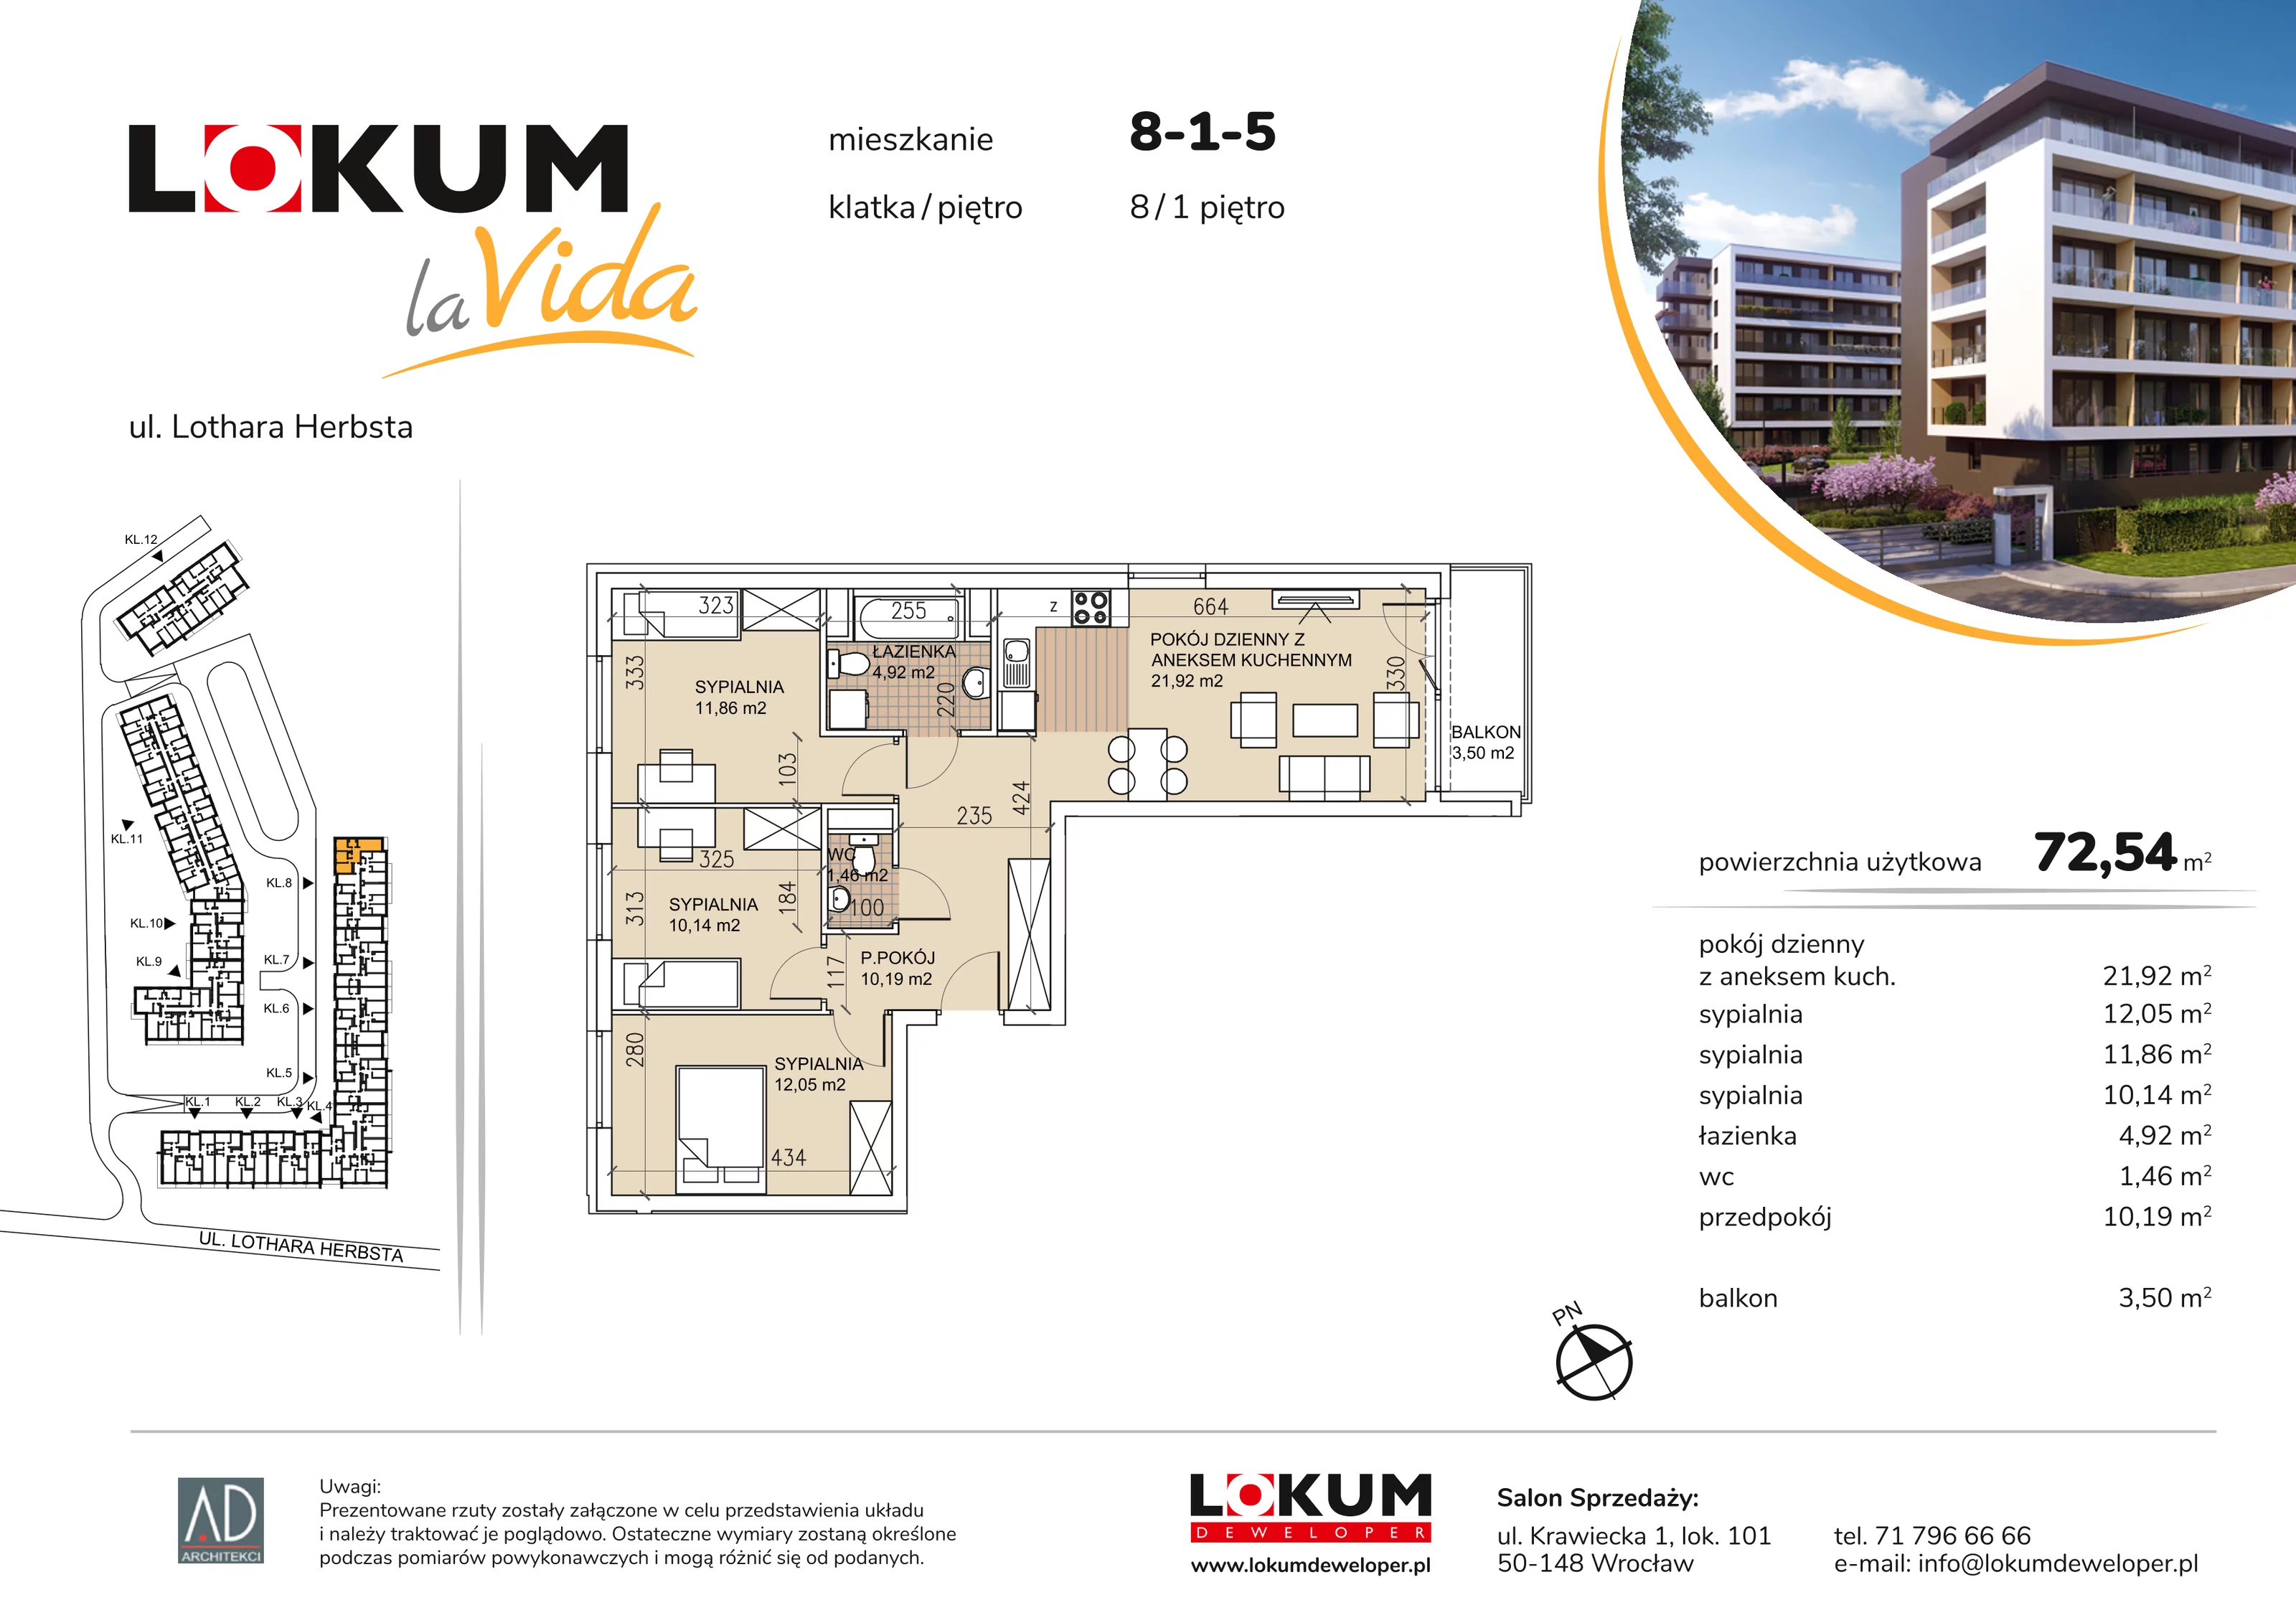 Mieszkanie 72,54 m², piętro 1, oferta nr 8-1-5, Lokum la Vida, Wrocław, Sołtysowice, ul. Lothara Herbsta